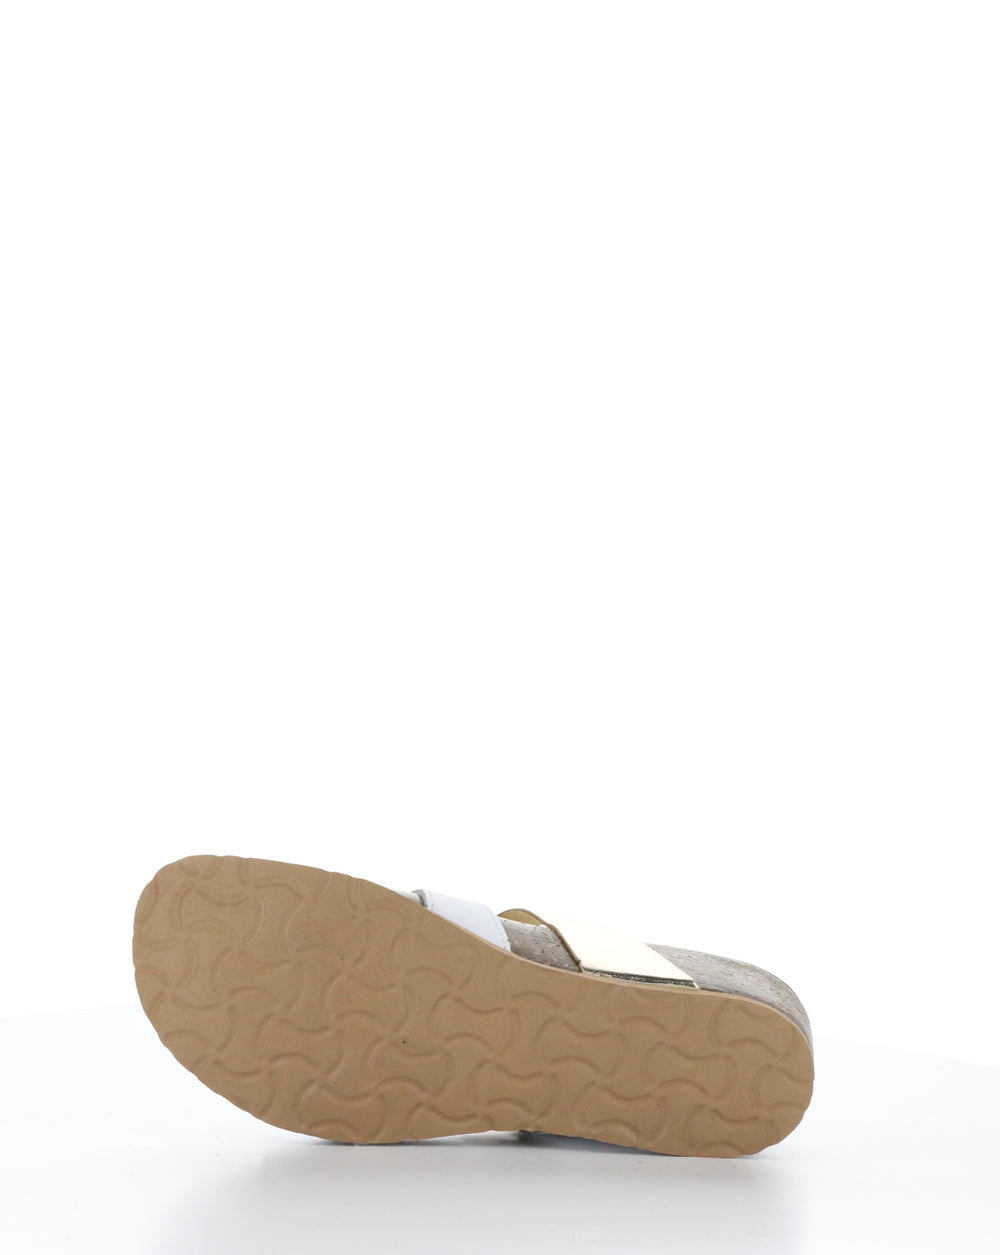 LUZZI WHITE/PLATINUM Slip-on Sandals